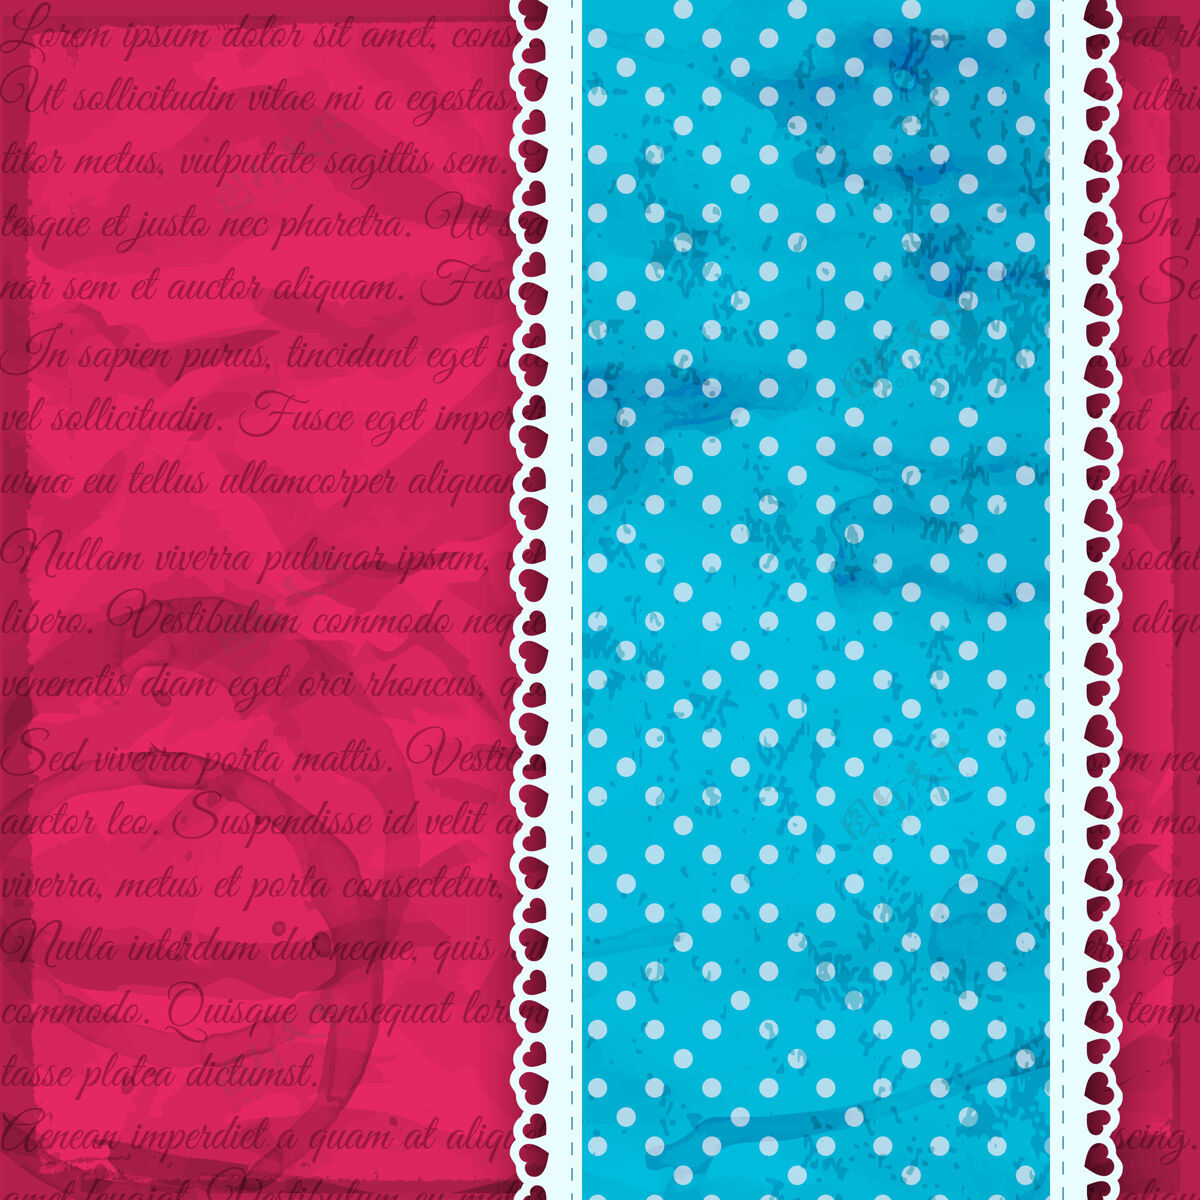 颜色浪漫的蓝色条纹与荷叶边和粉红色矢量图上的点形状时尚色彩